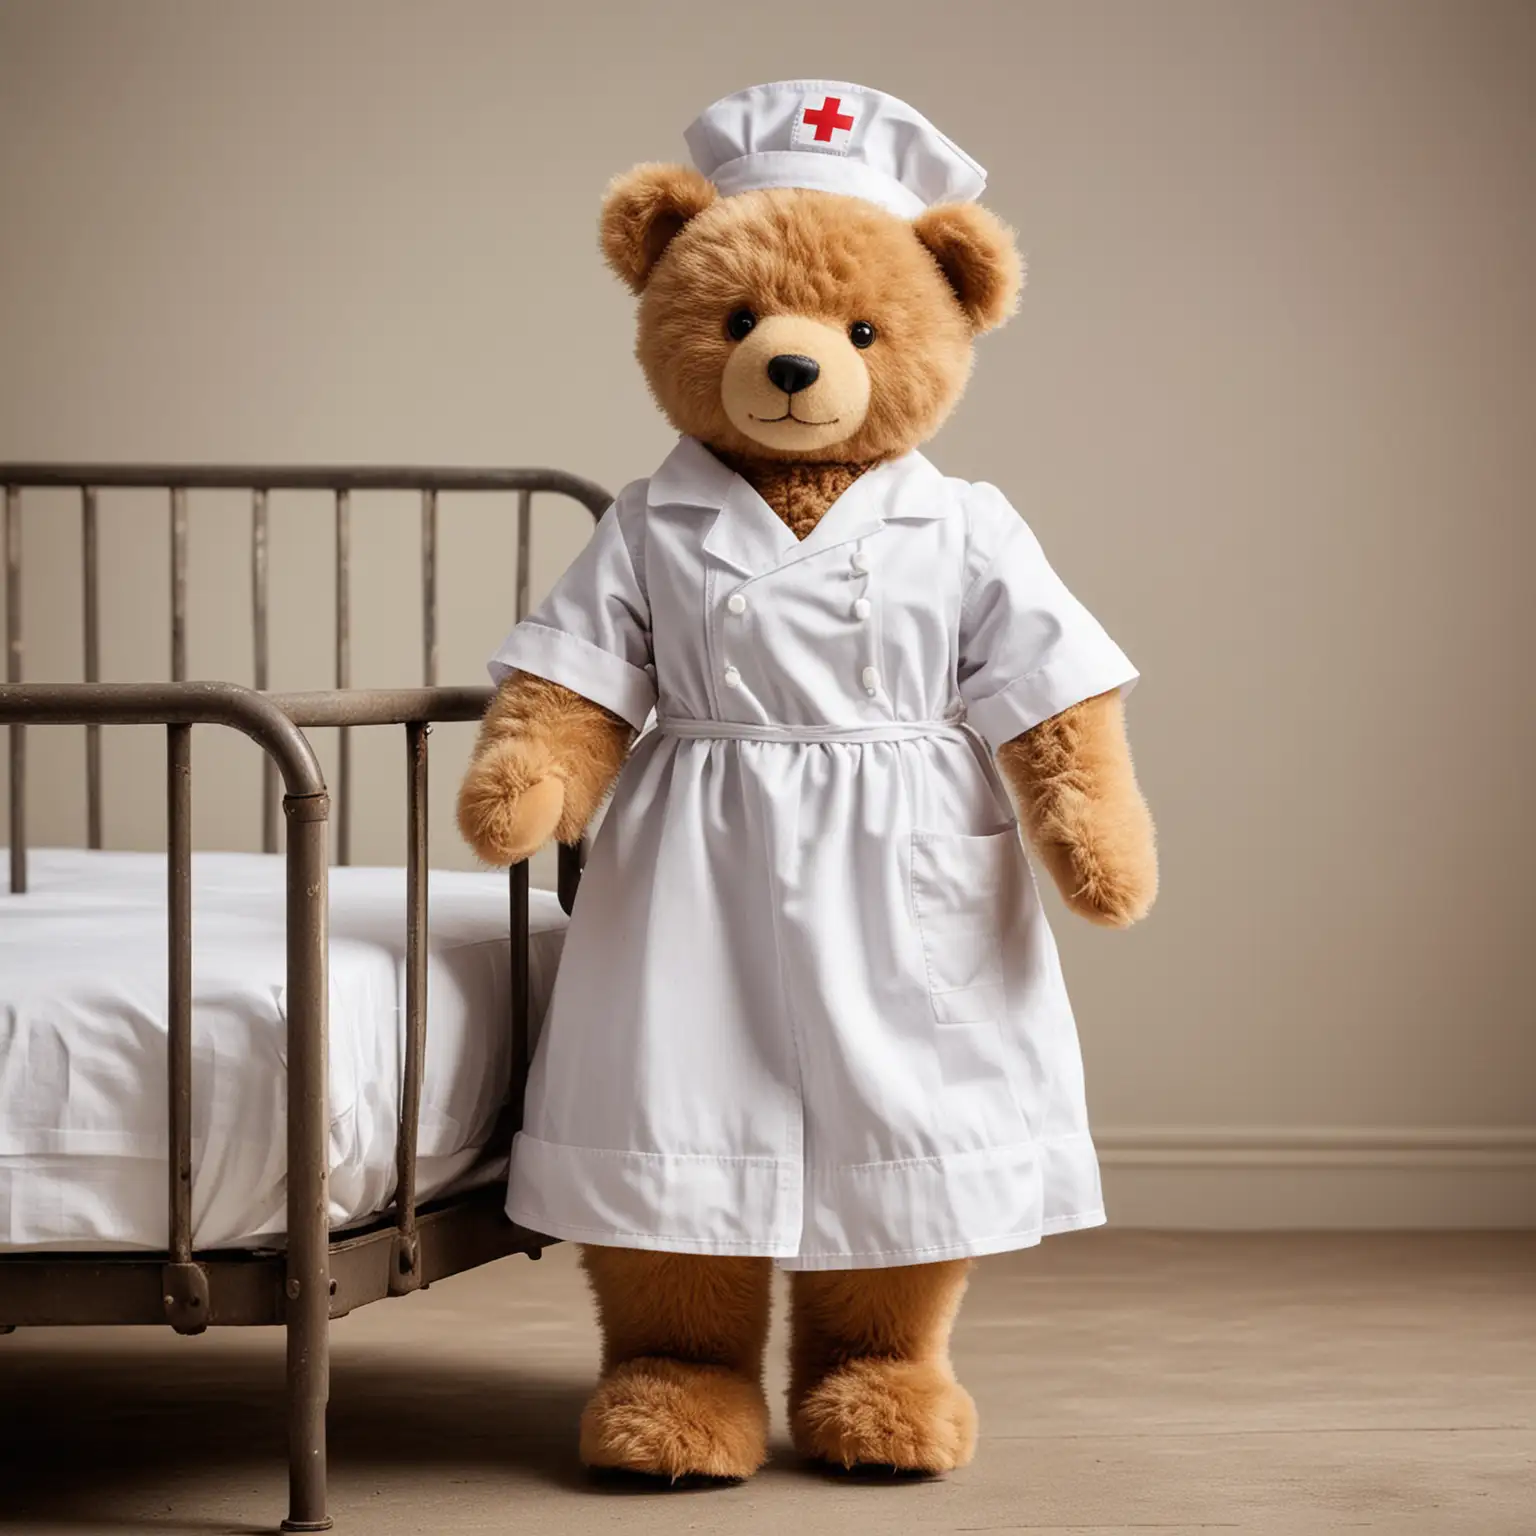 Vintage Teddy Bear Nurse Standing by Old Metal Bed